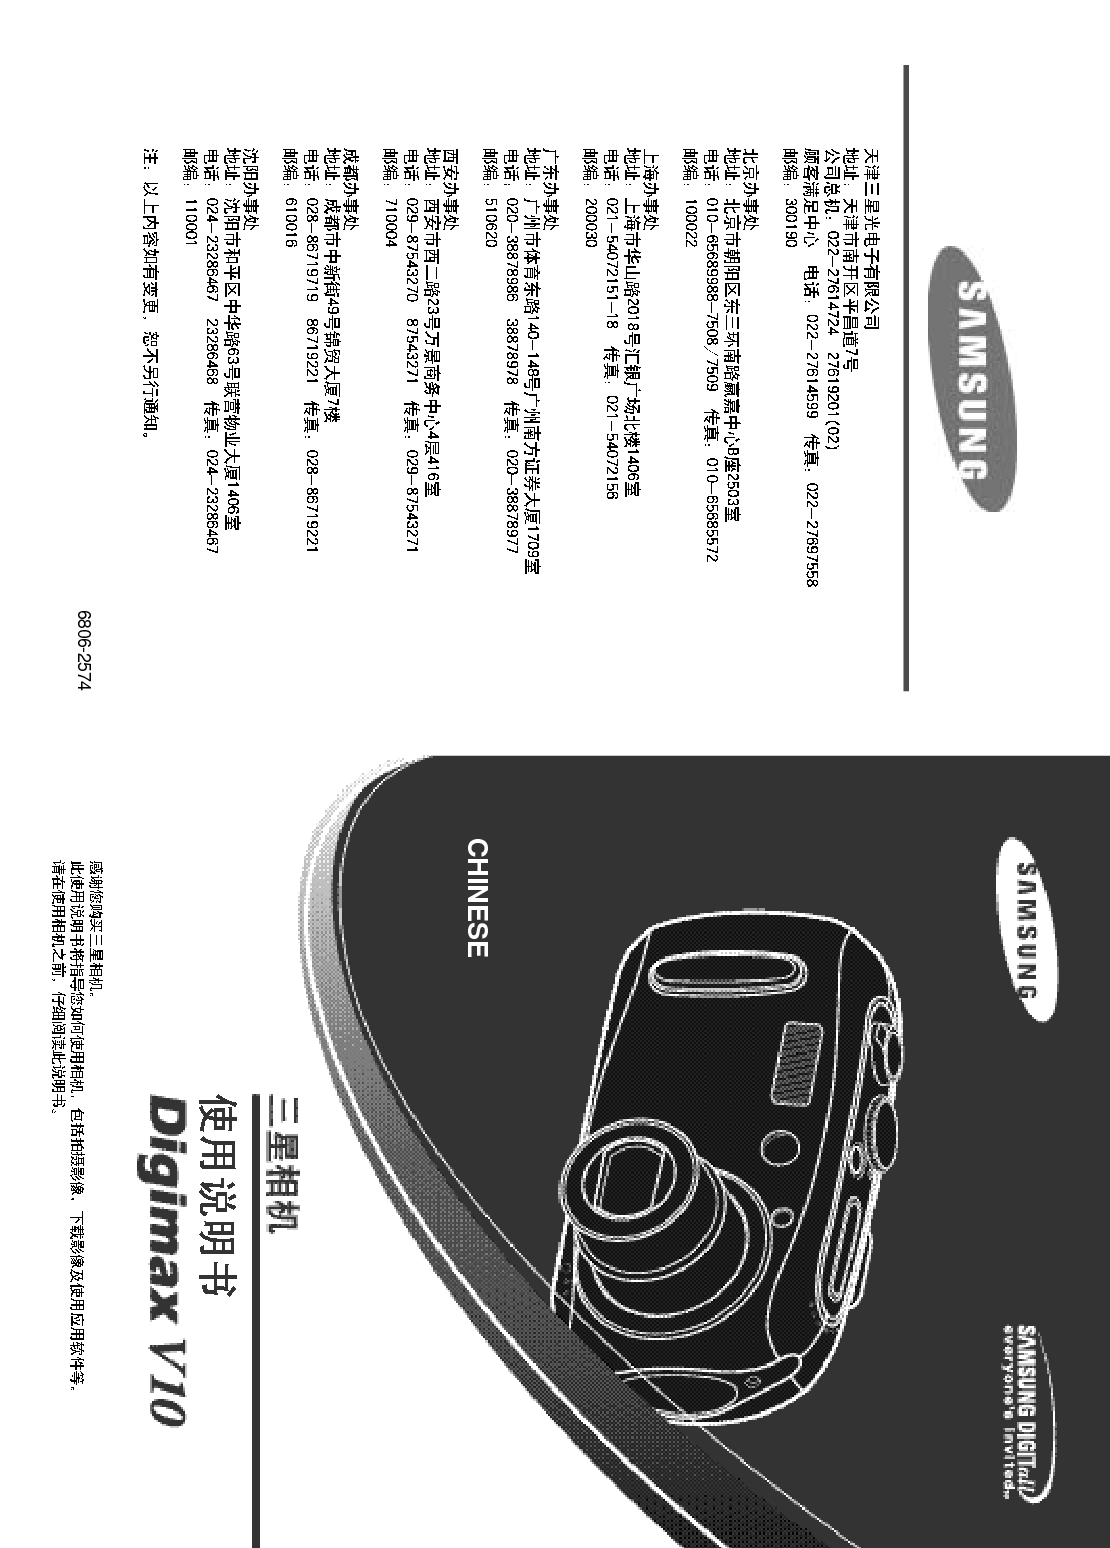 三星 Samsung V10 用户手册 封面